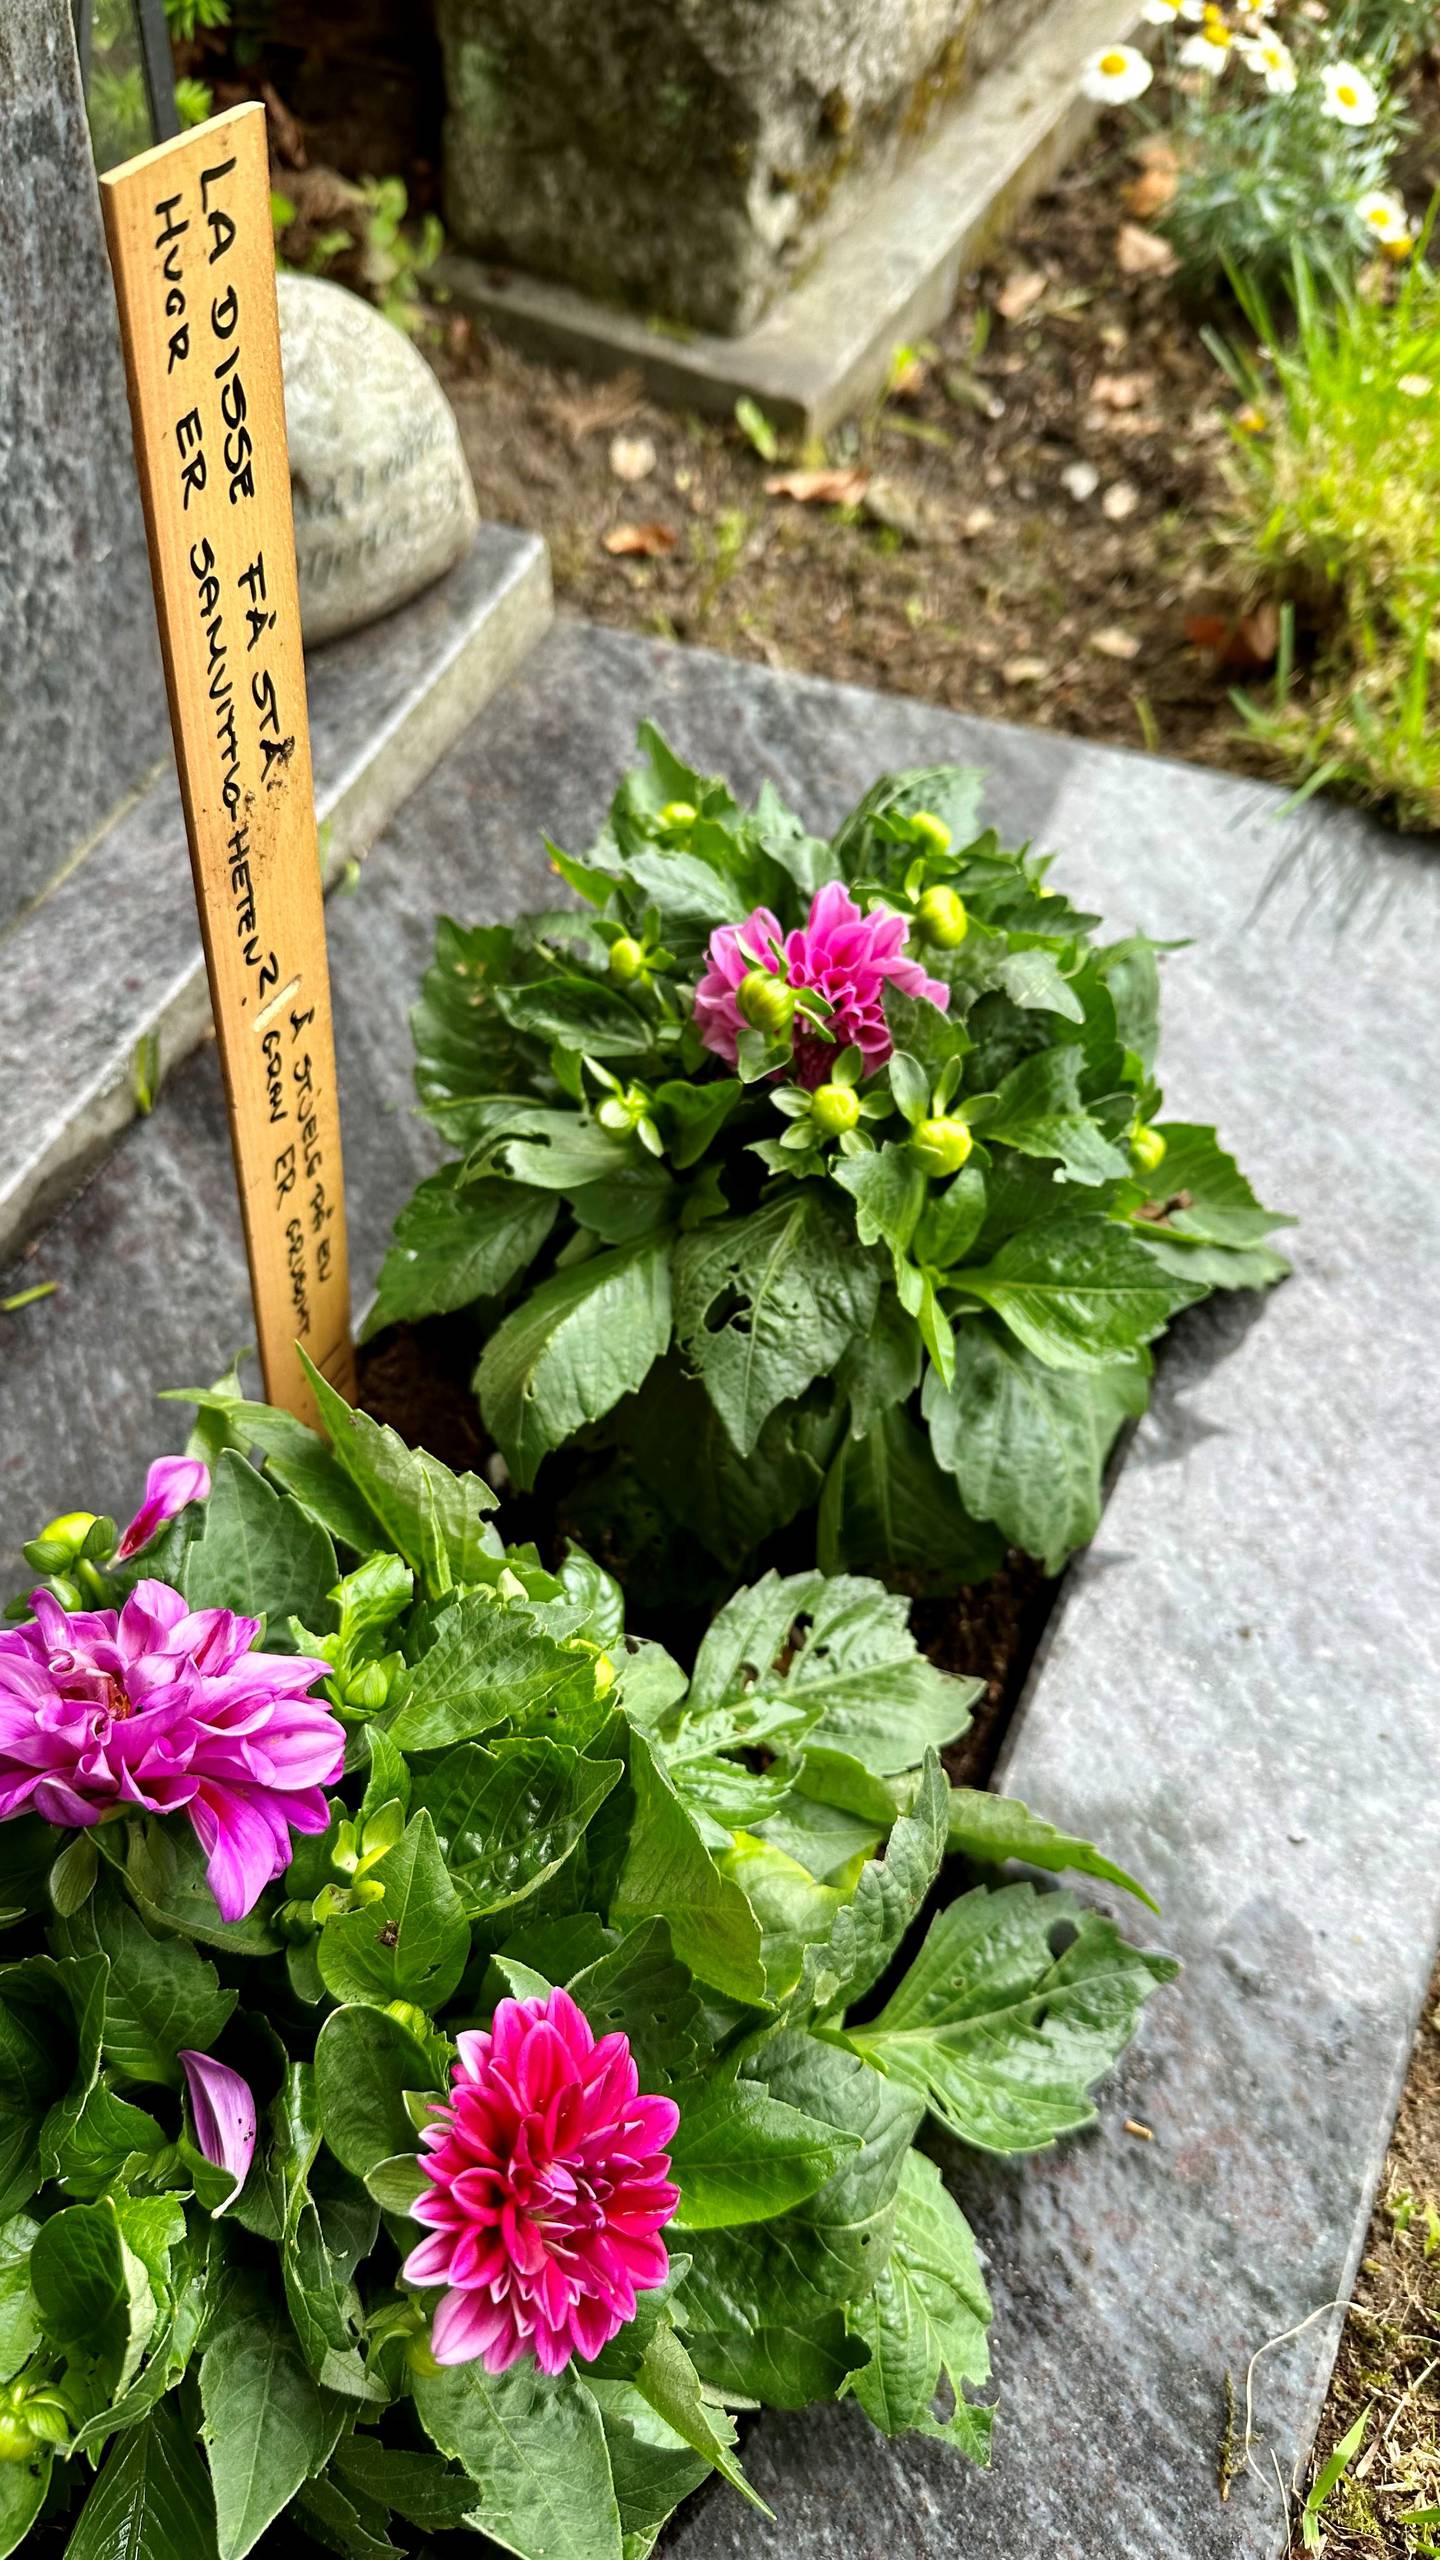 Søskenbarnet til Ole Klemetsen, Torill L. Bjerke, har opplevd at tyver har tatt blomstene fra graven til mannen hennes ti-tolv ganger. Denne gangen har hun lagt igjen en beskjed til gravtyvene: "Ladisse få stå. Hvor er samvittigheten?"